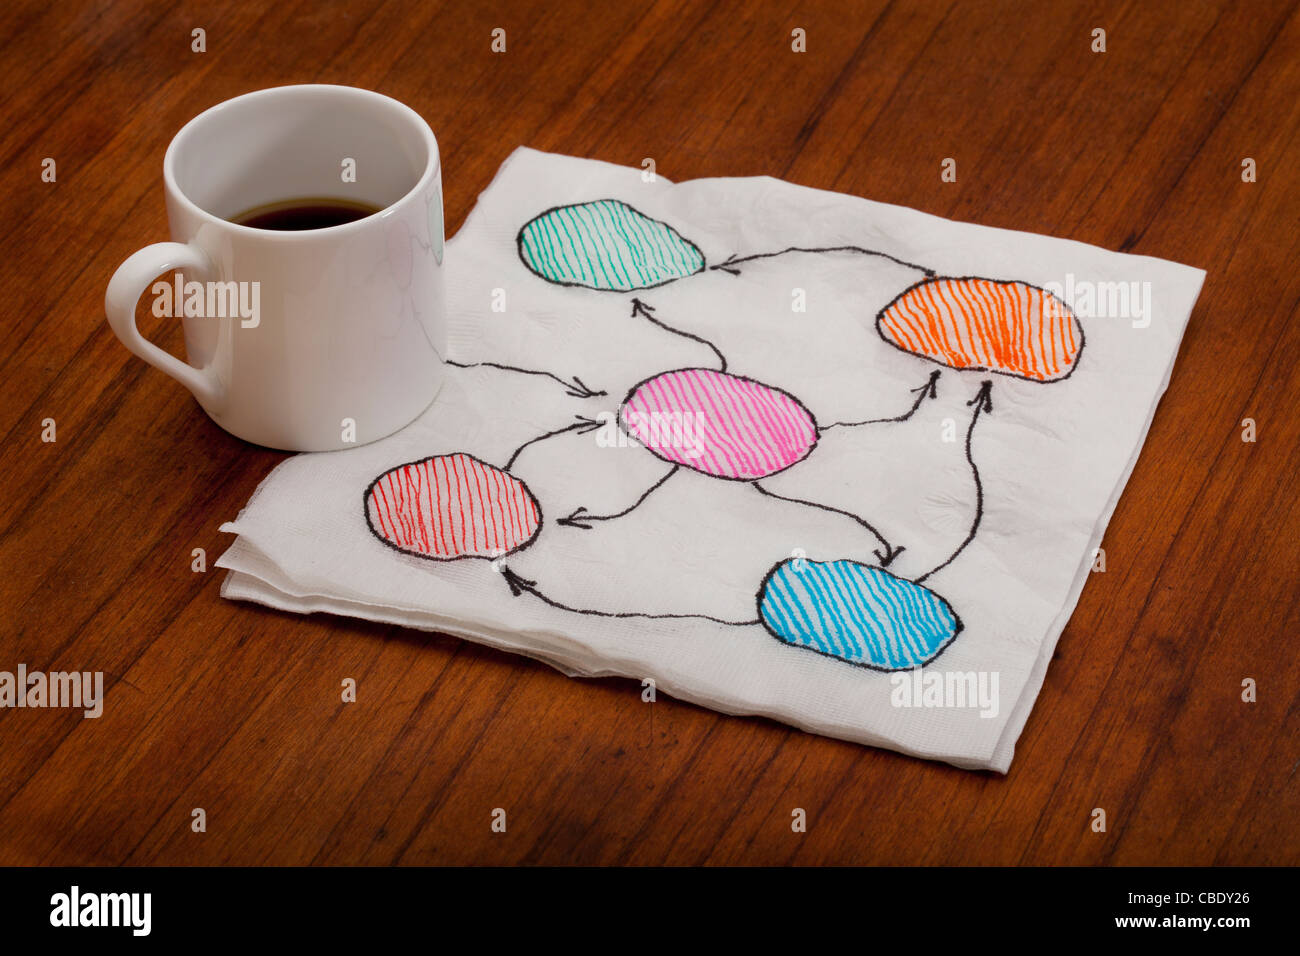 Résumé organigramme ou mind map - Serviette doodle avec tasse à café expresso sur la vieille table en bois Banque D'Images